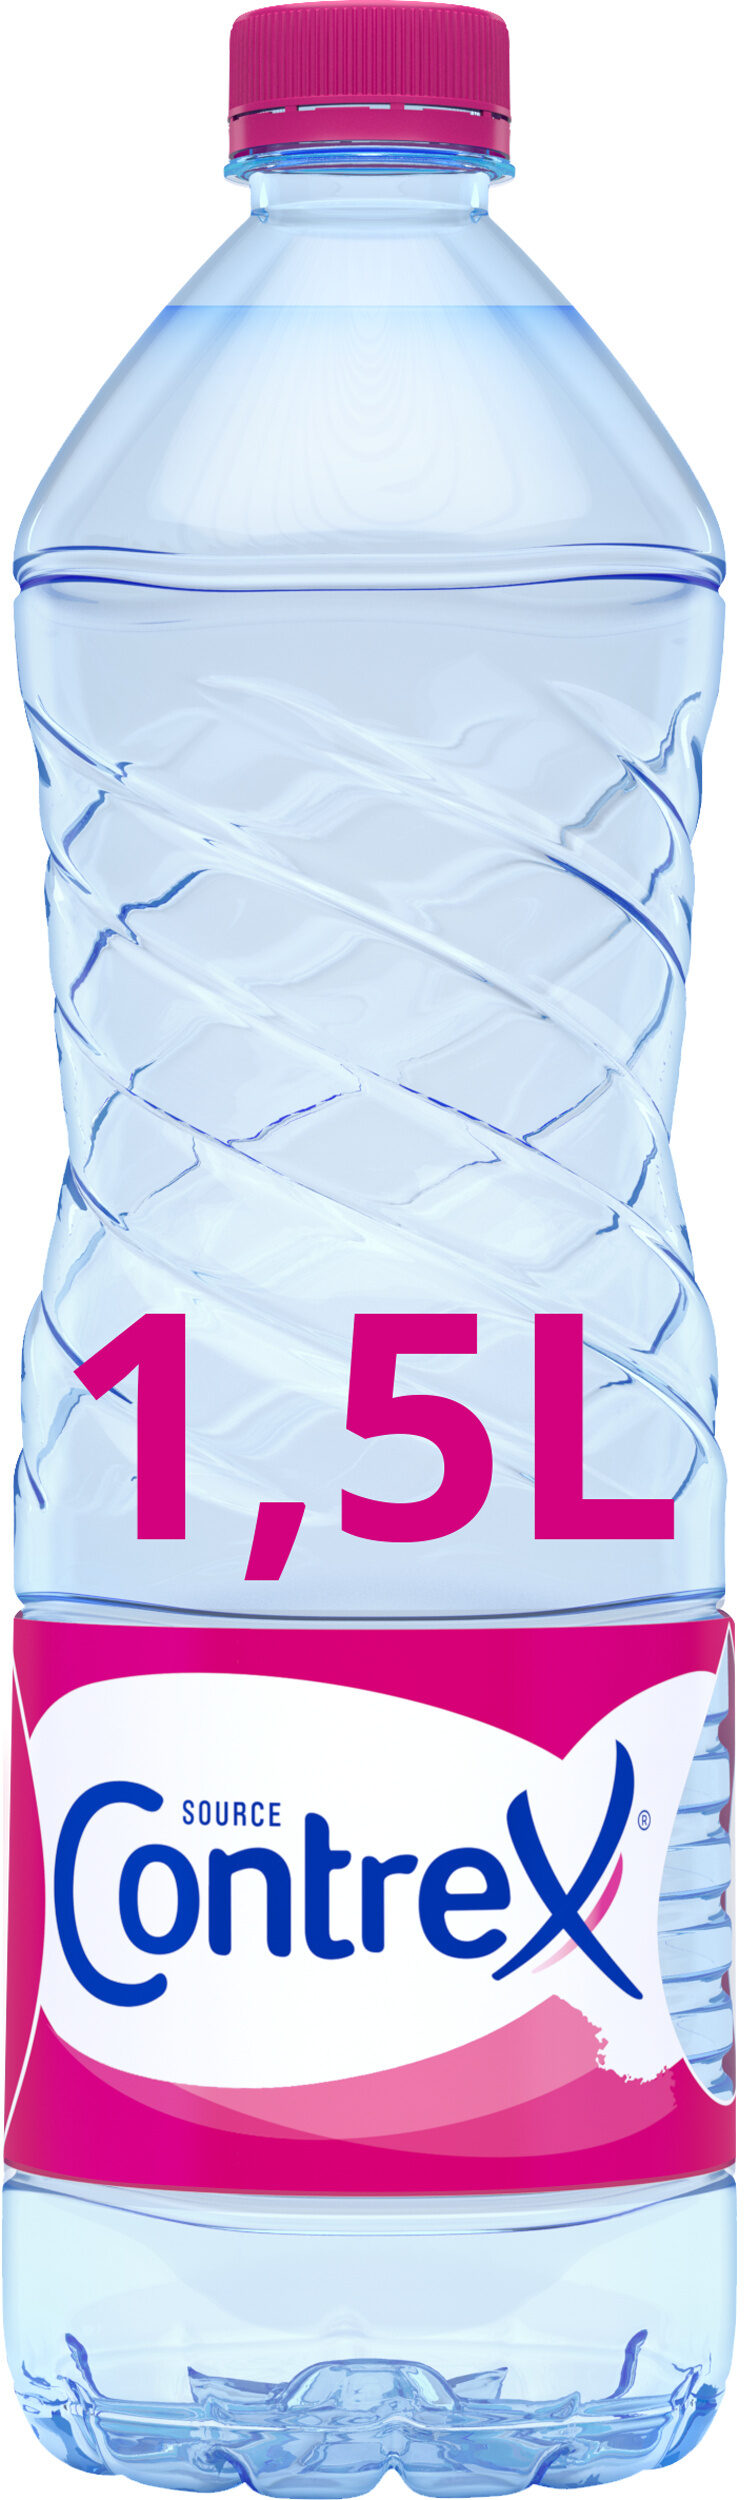 CONTREX eau minérale naturelle - Produkt - fr